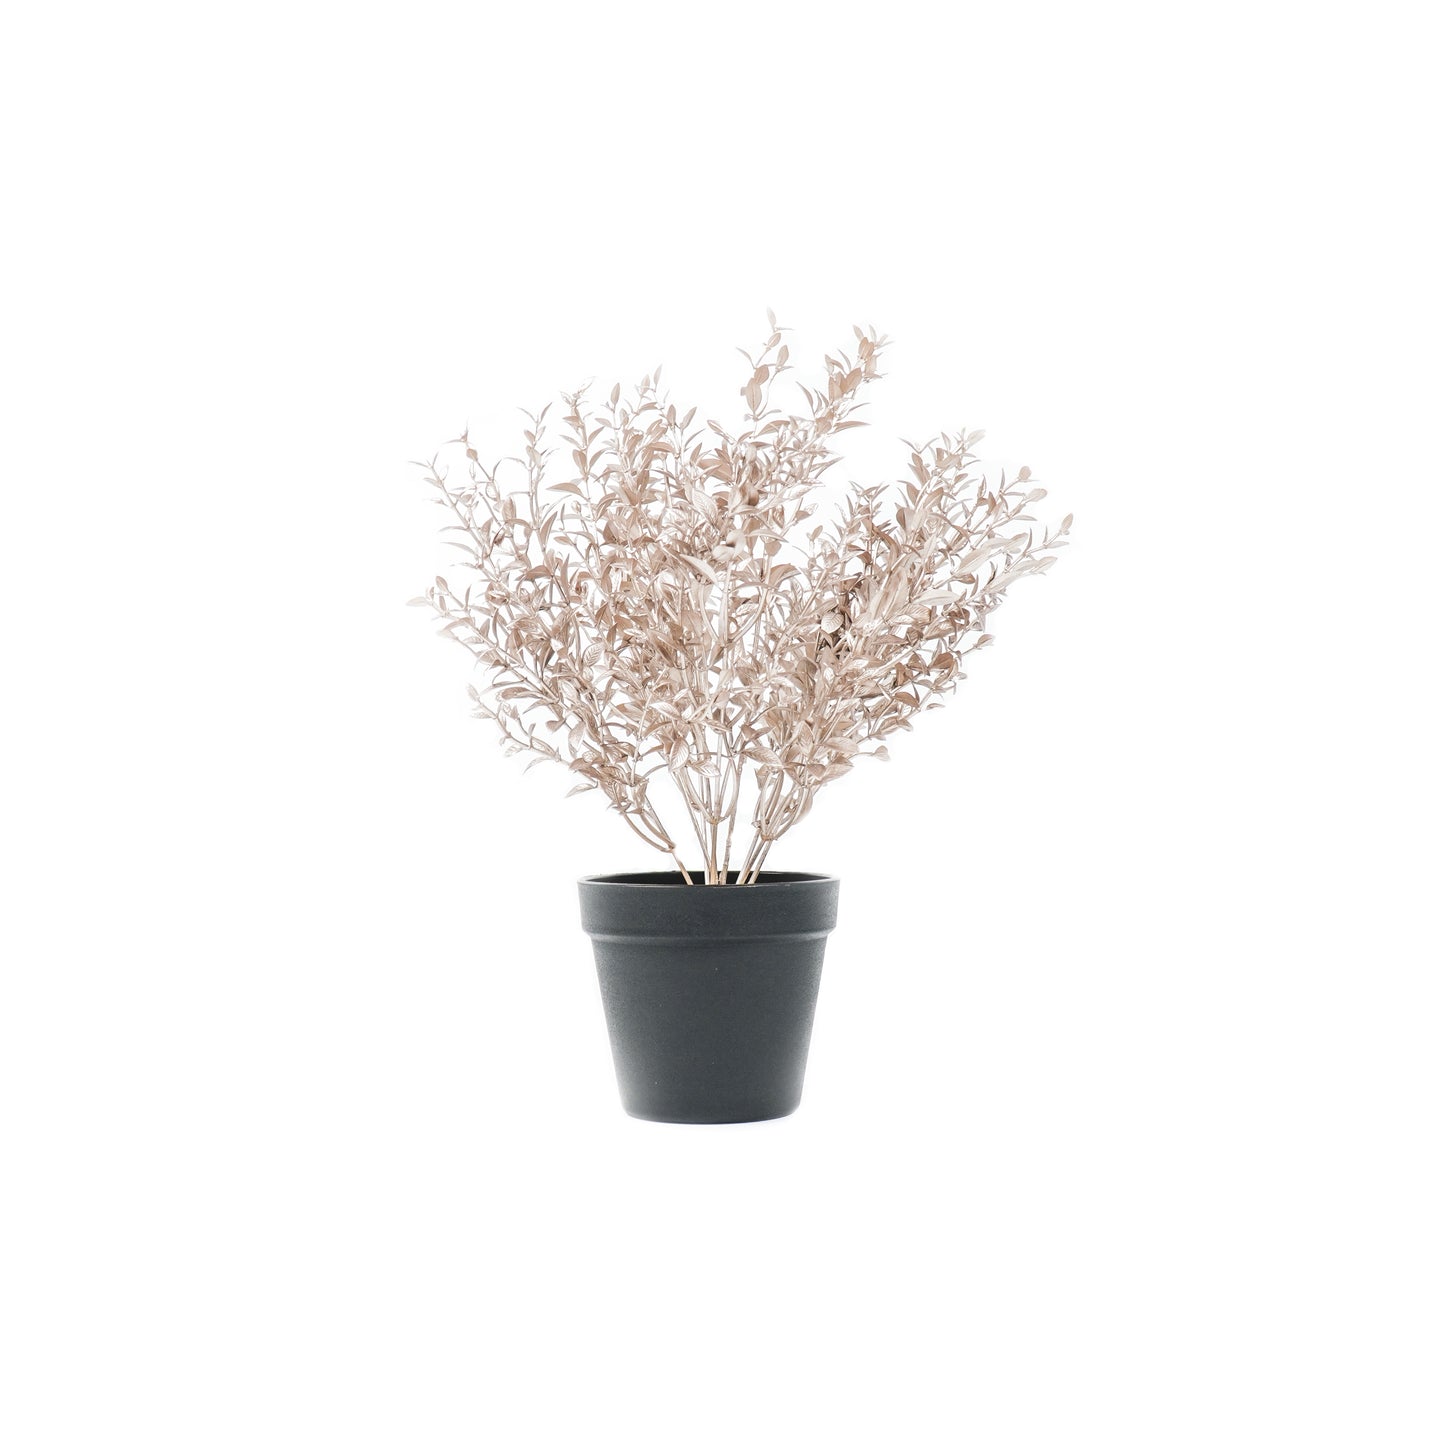 HV Plant with pot - Bronze/Gold - 15x30x45cm